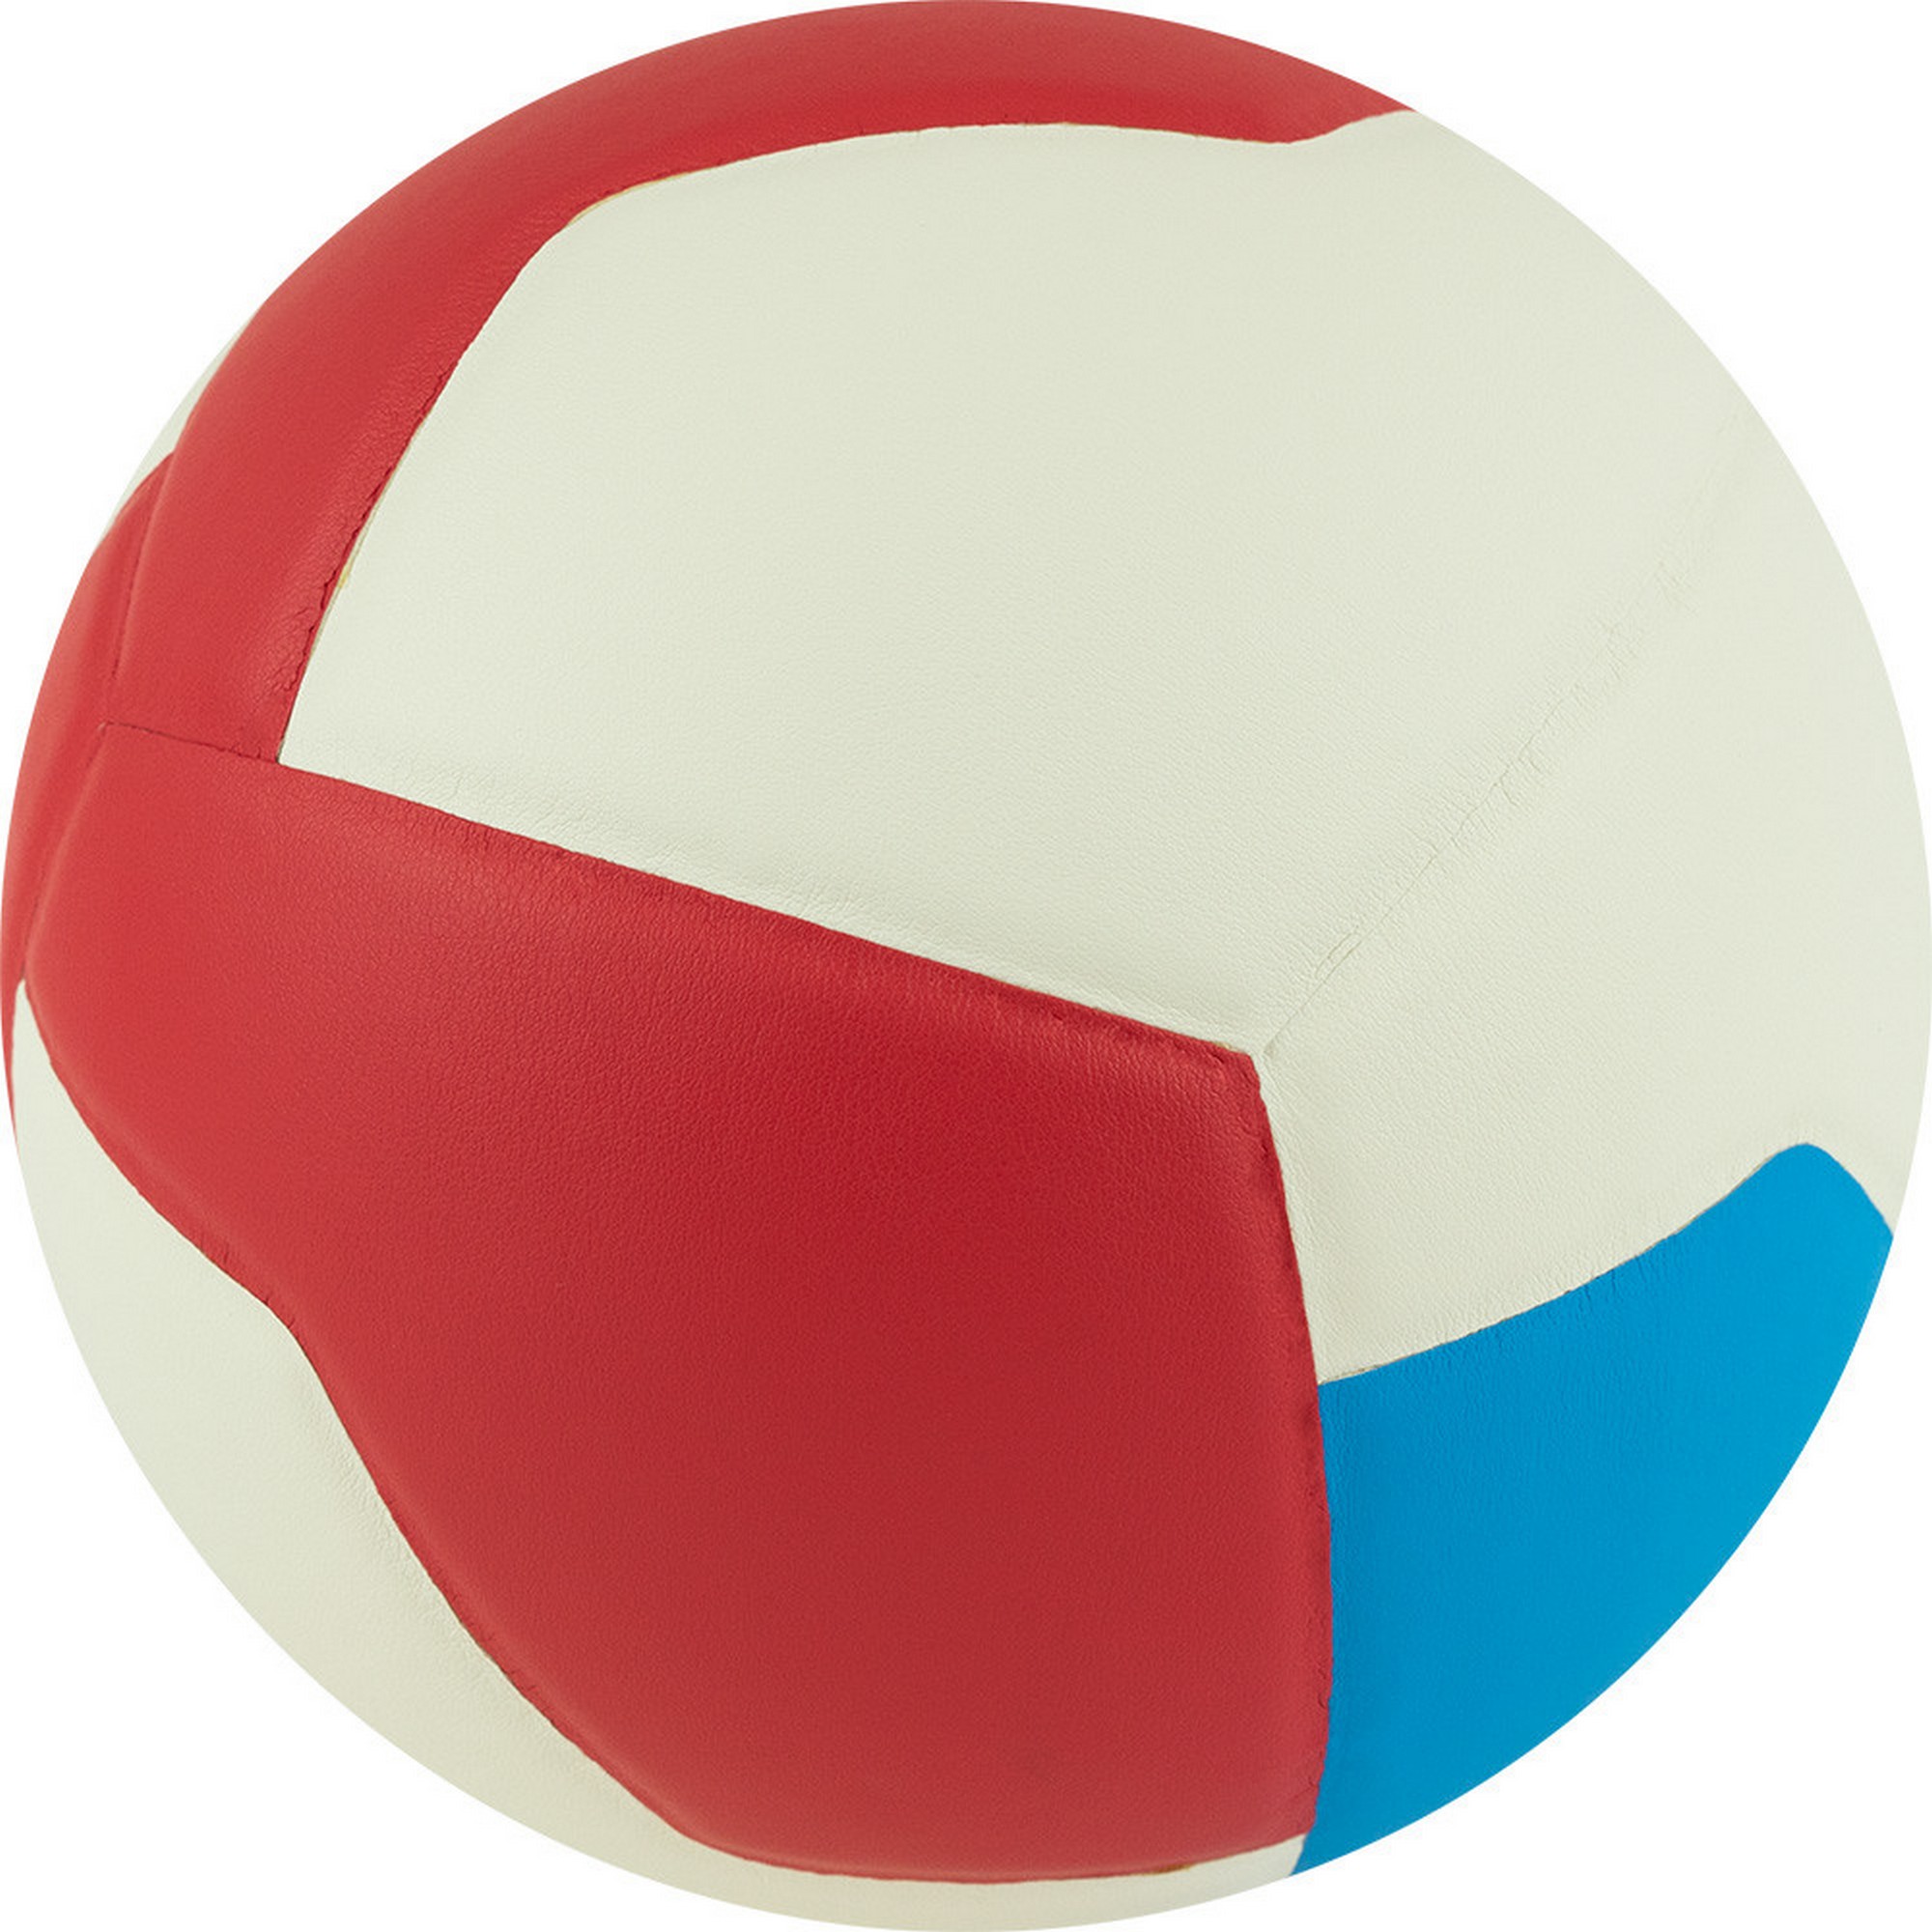 Мяч волейбольный Gala Training Heavy 12 BV5475S р.5 2000_2000